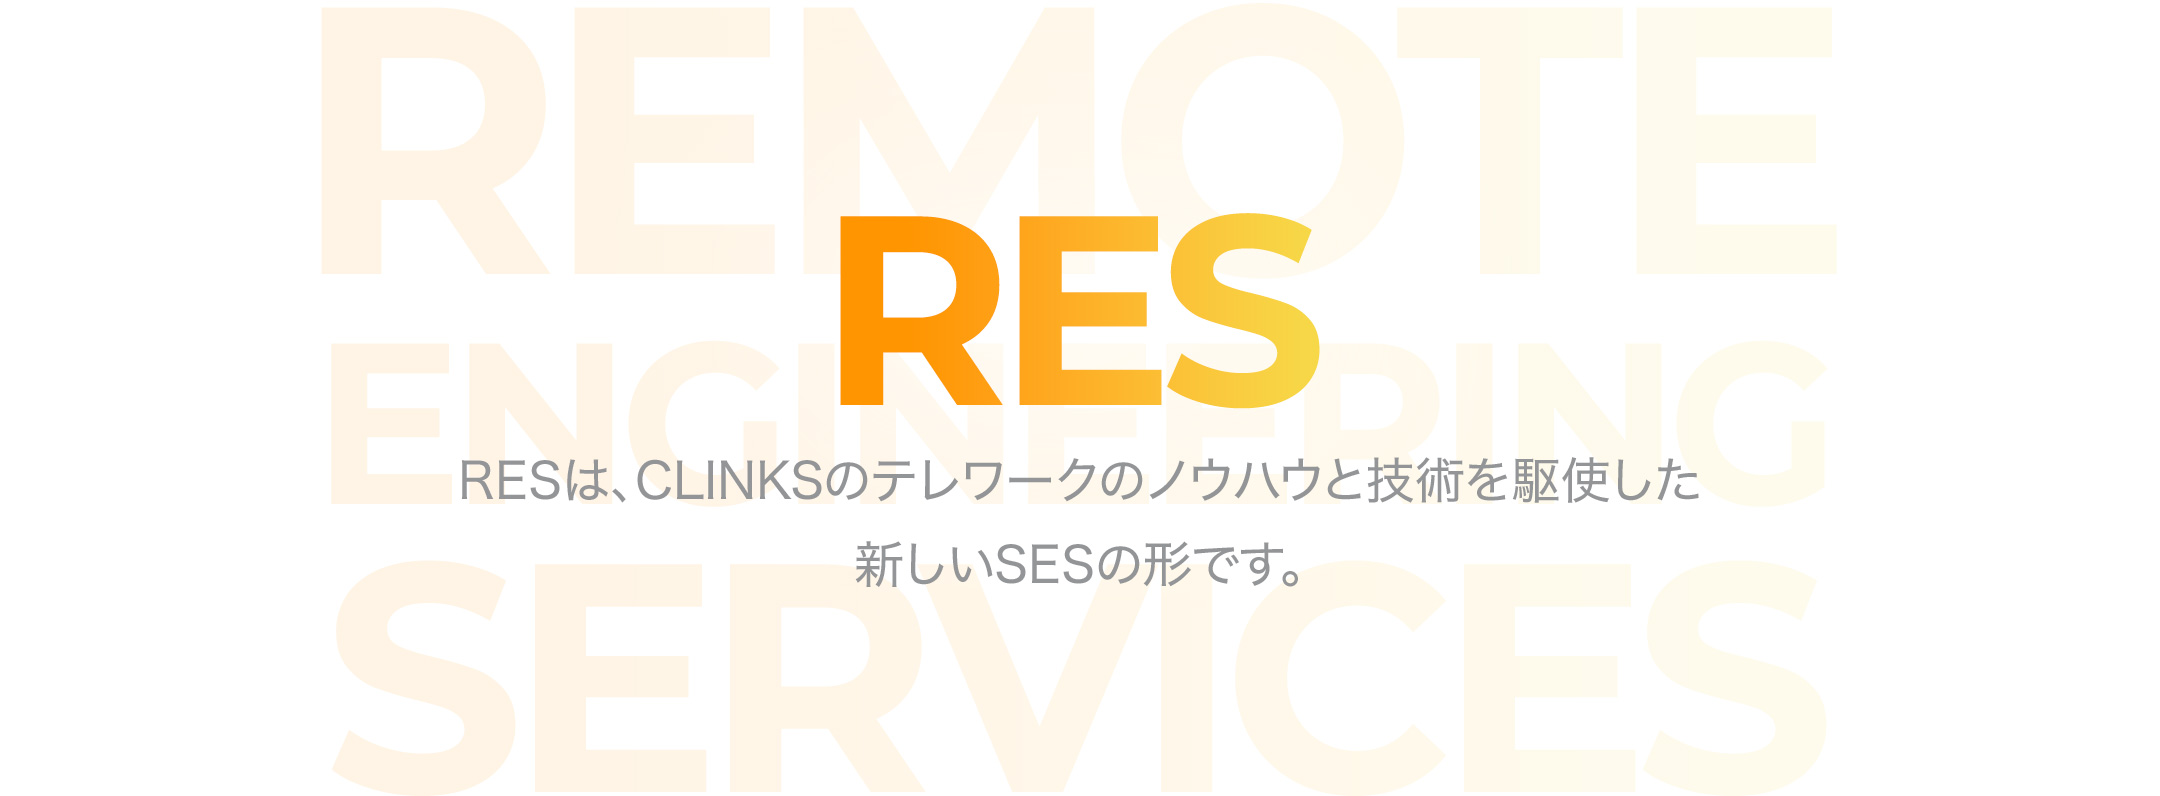 RES RESは、CLINKSのテレワークのノウハウと技術を駆使した新しいSESの形です。